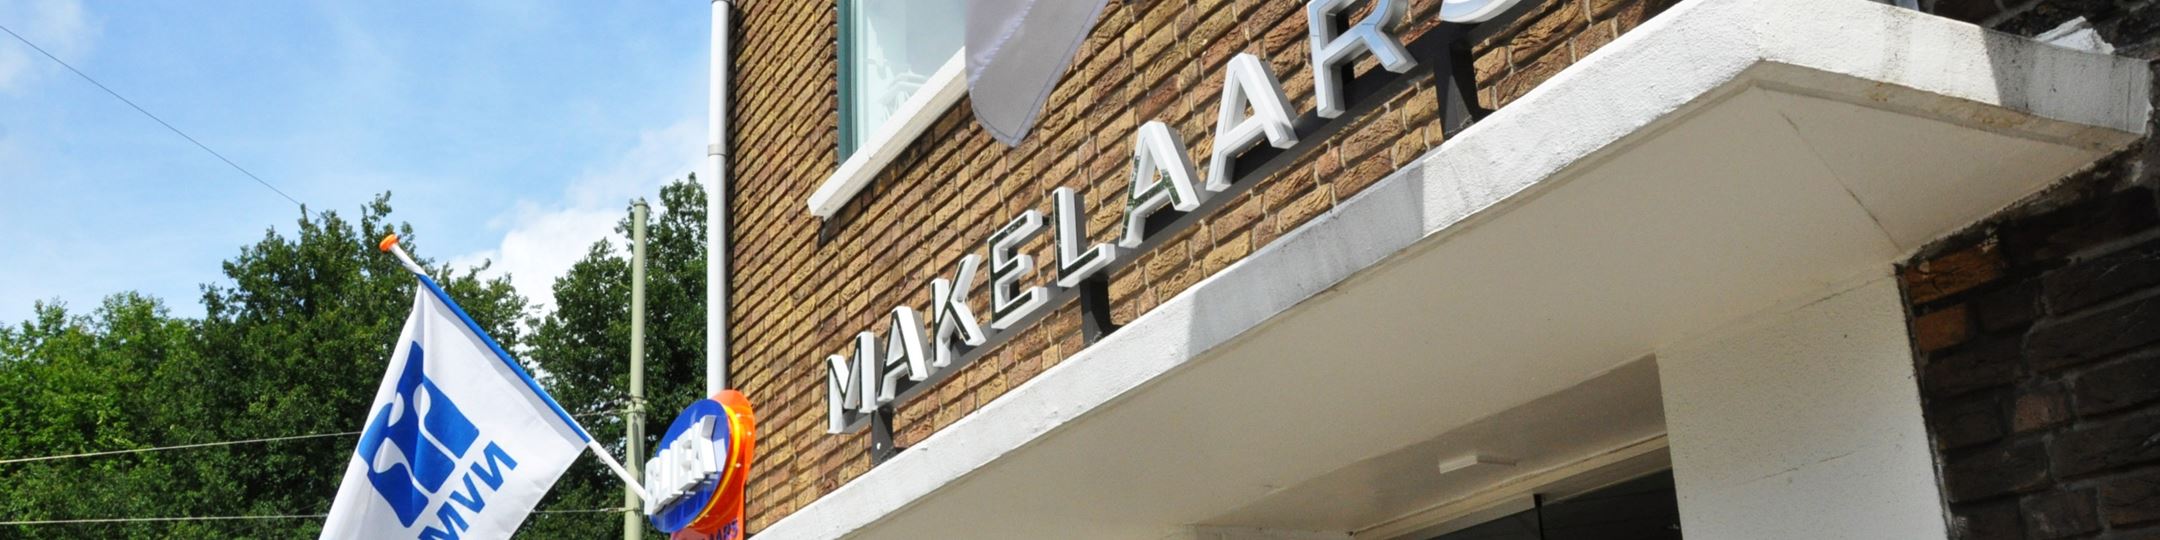 Banner Bliek Makelaars